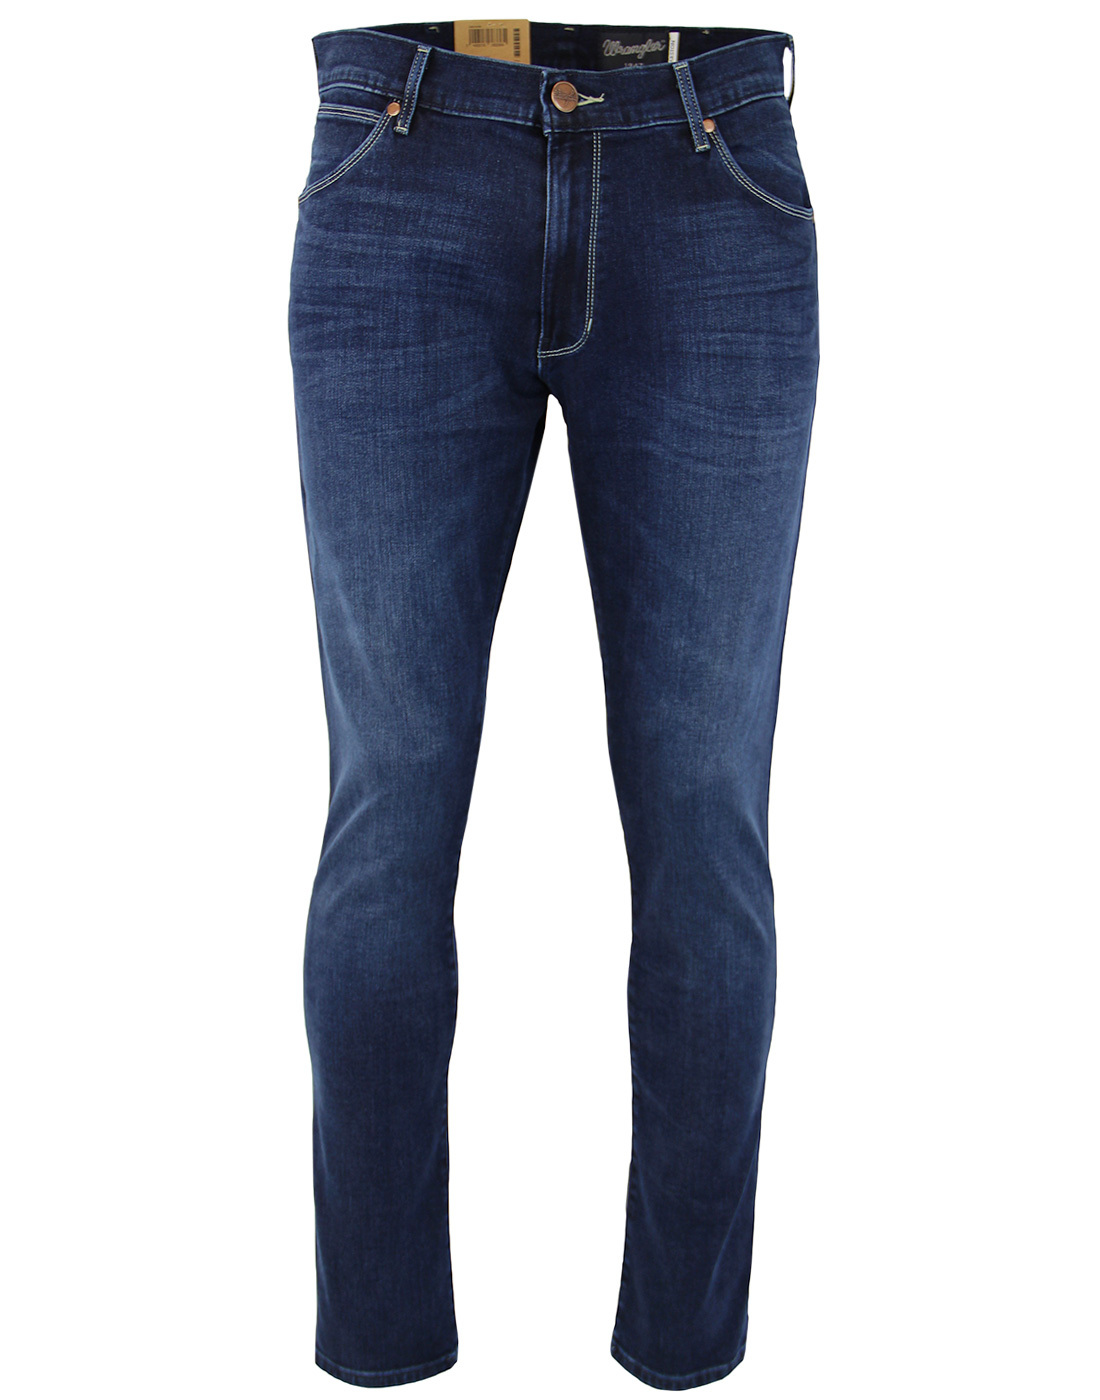 Larston WRANGLER Slim Soft Luxe Denim Jeans